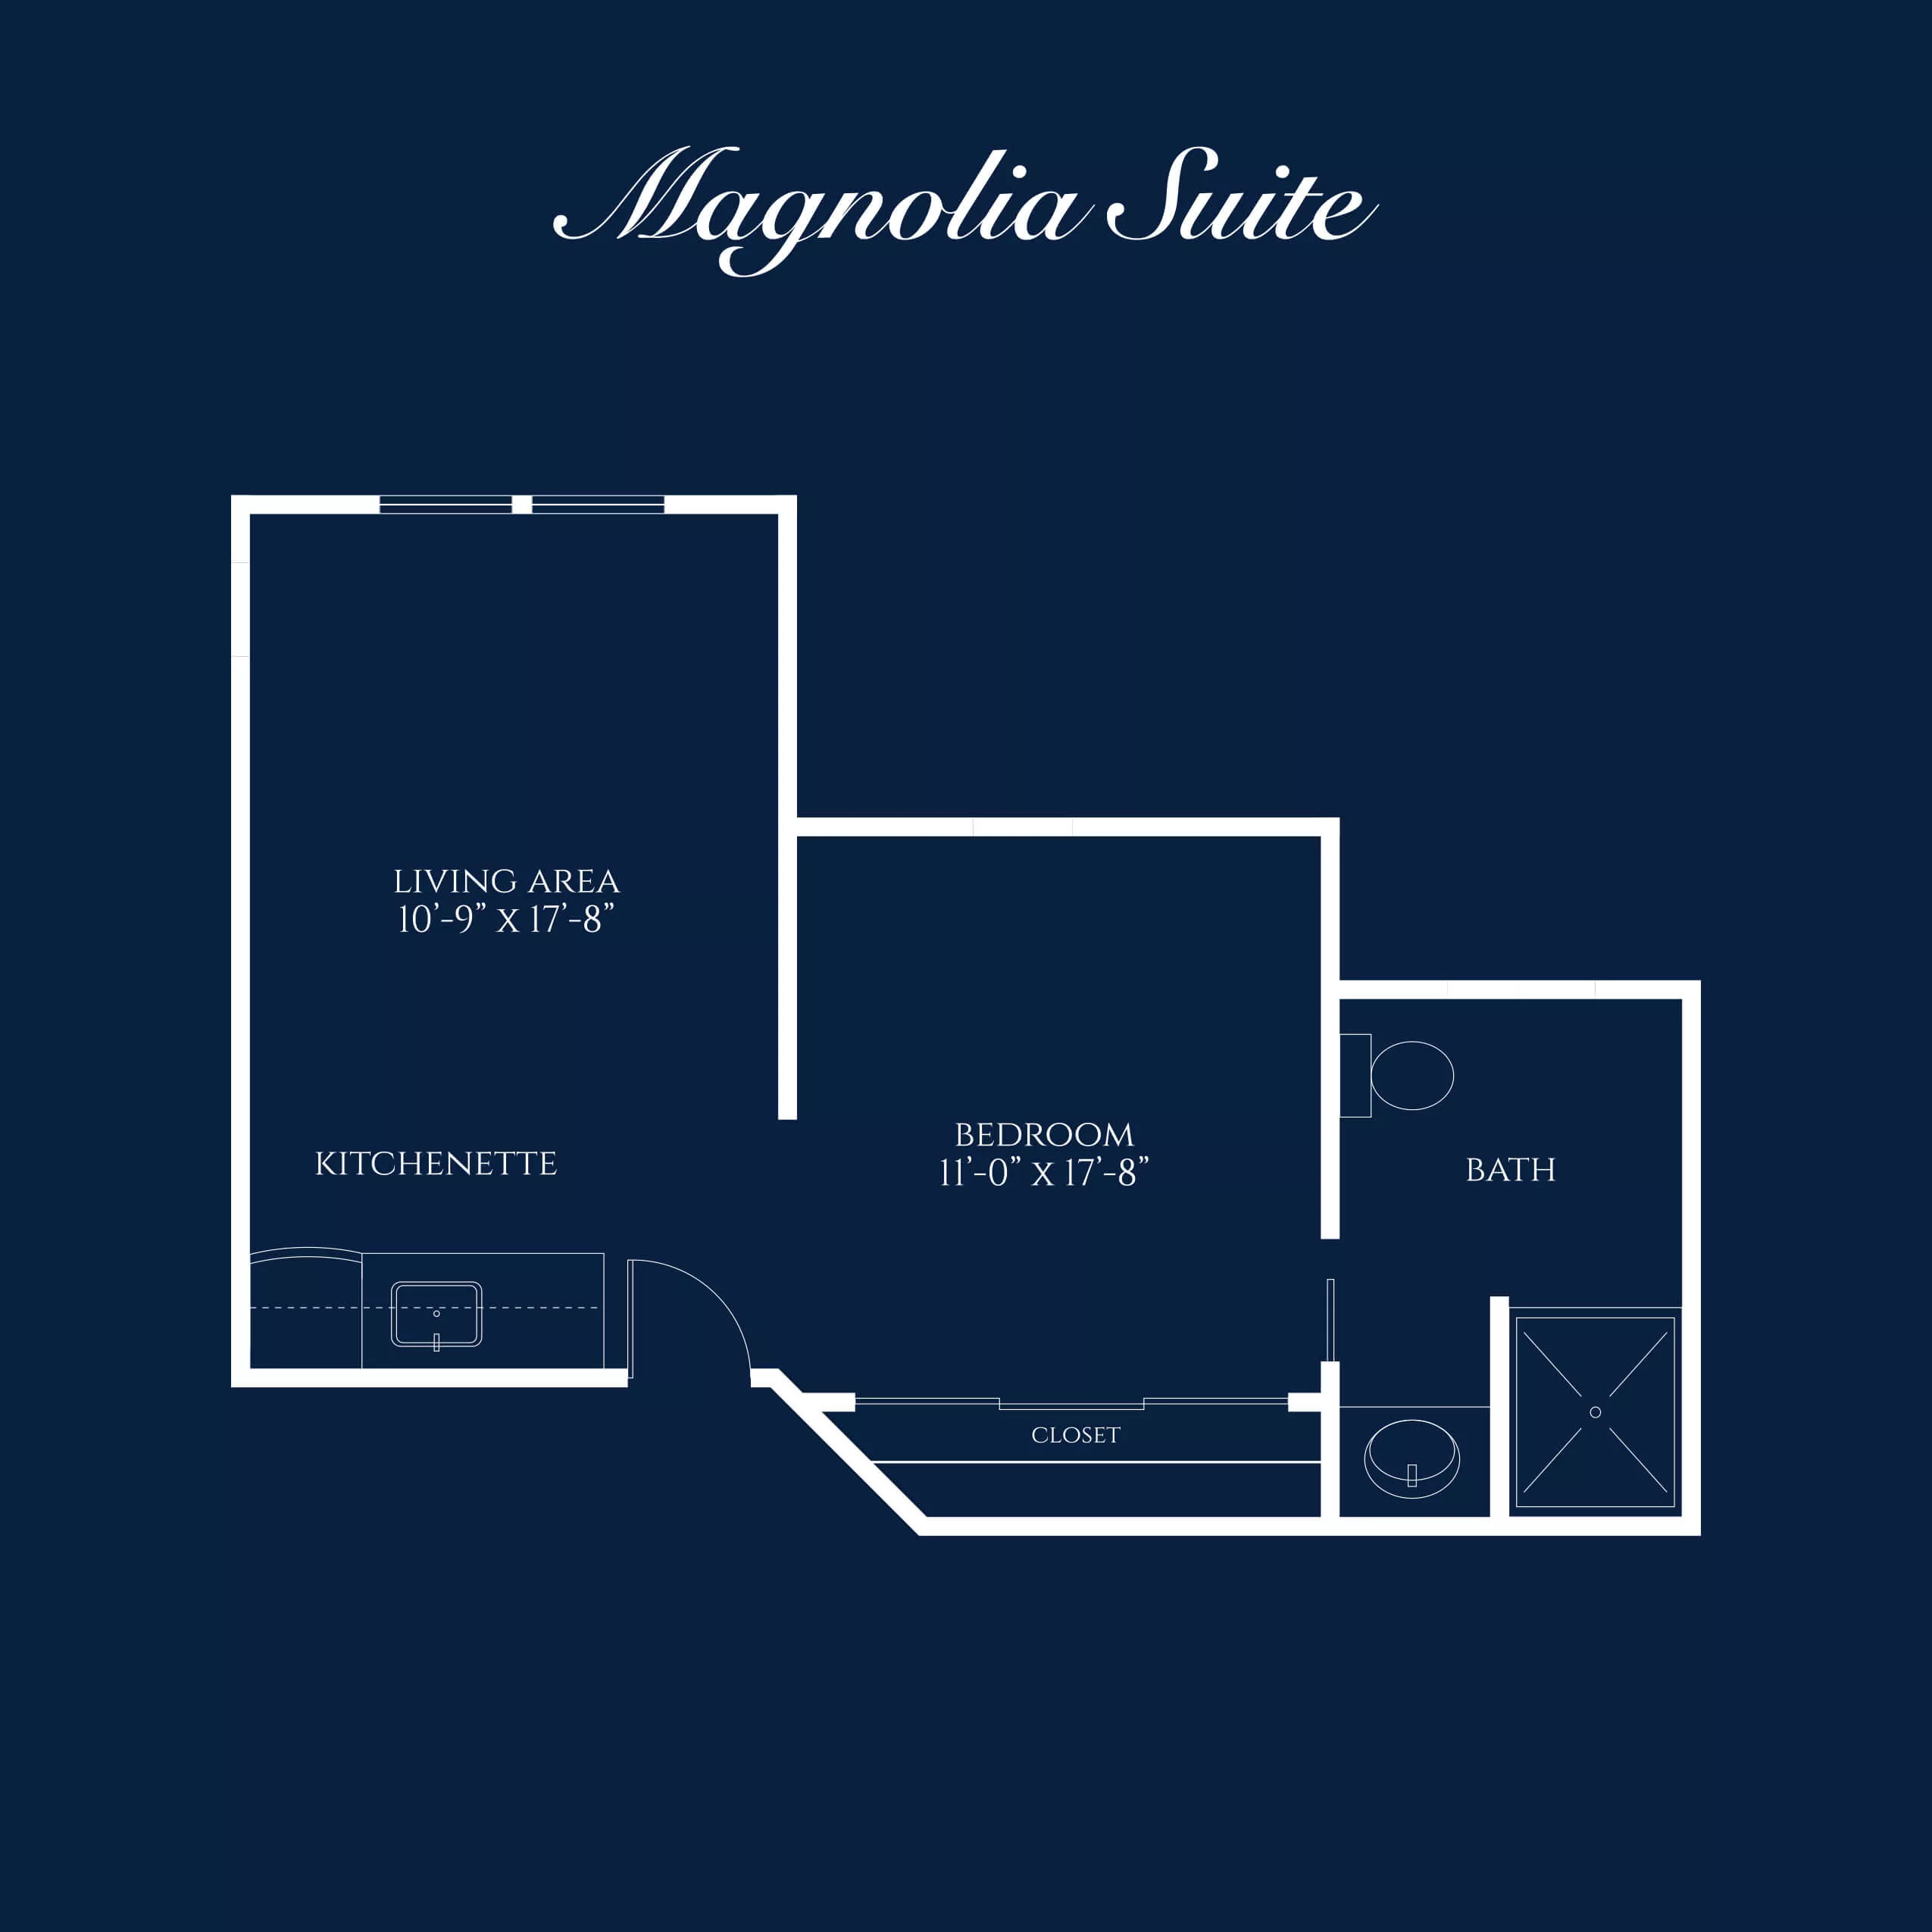 Floorplan of the Magnolia Suite